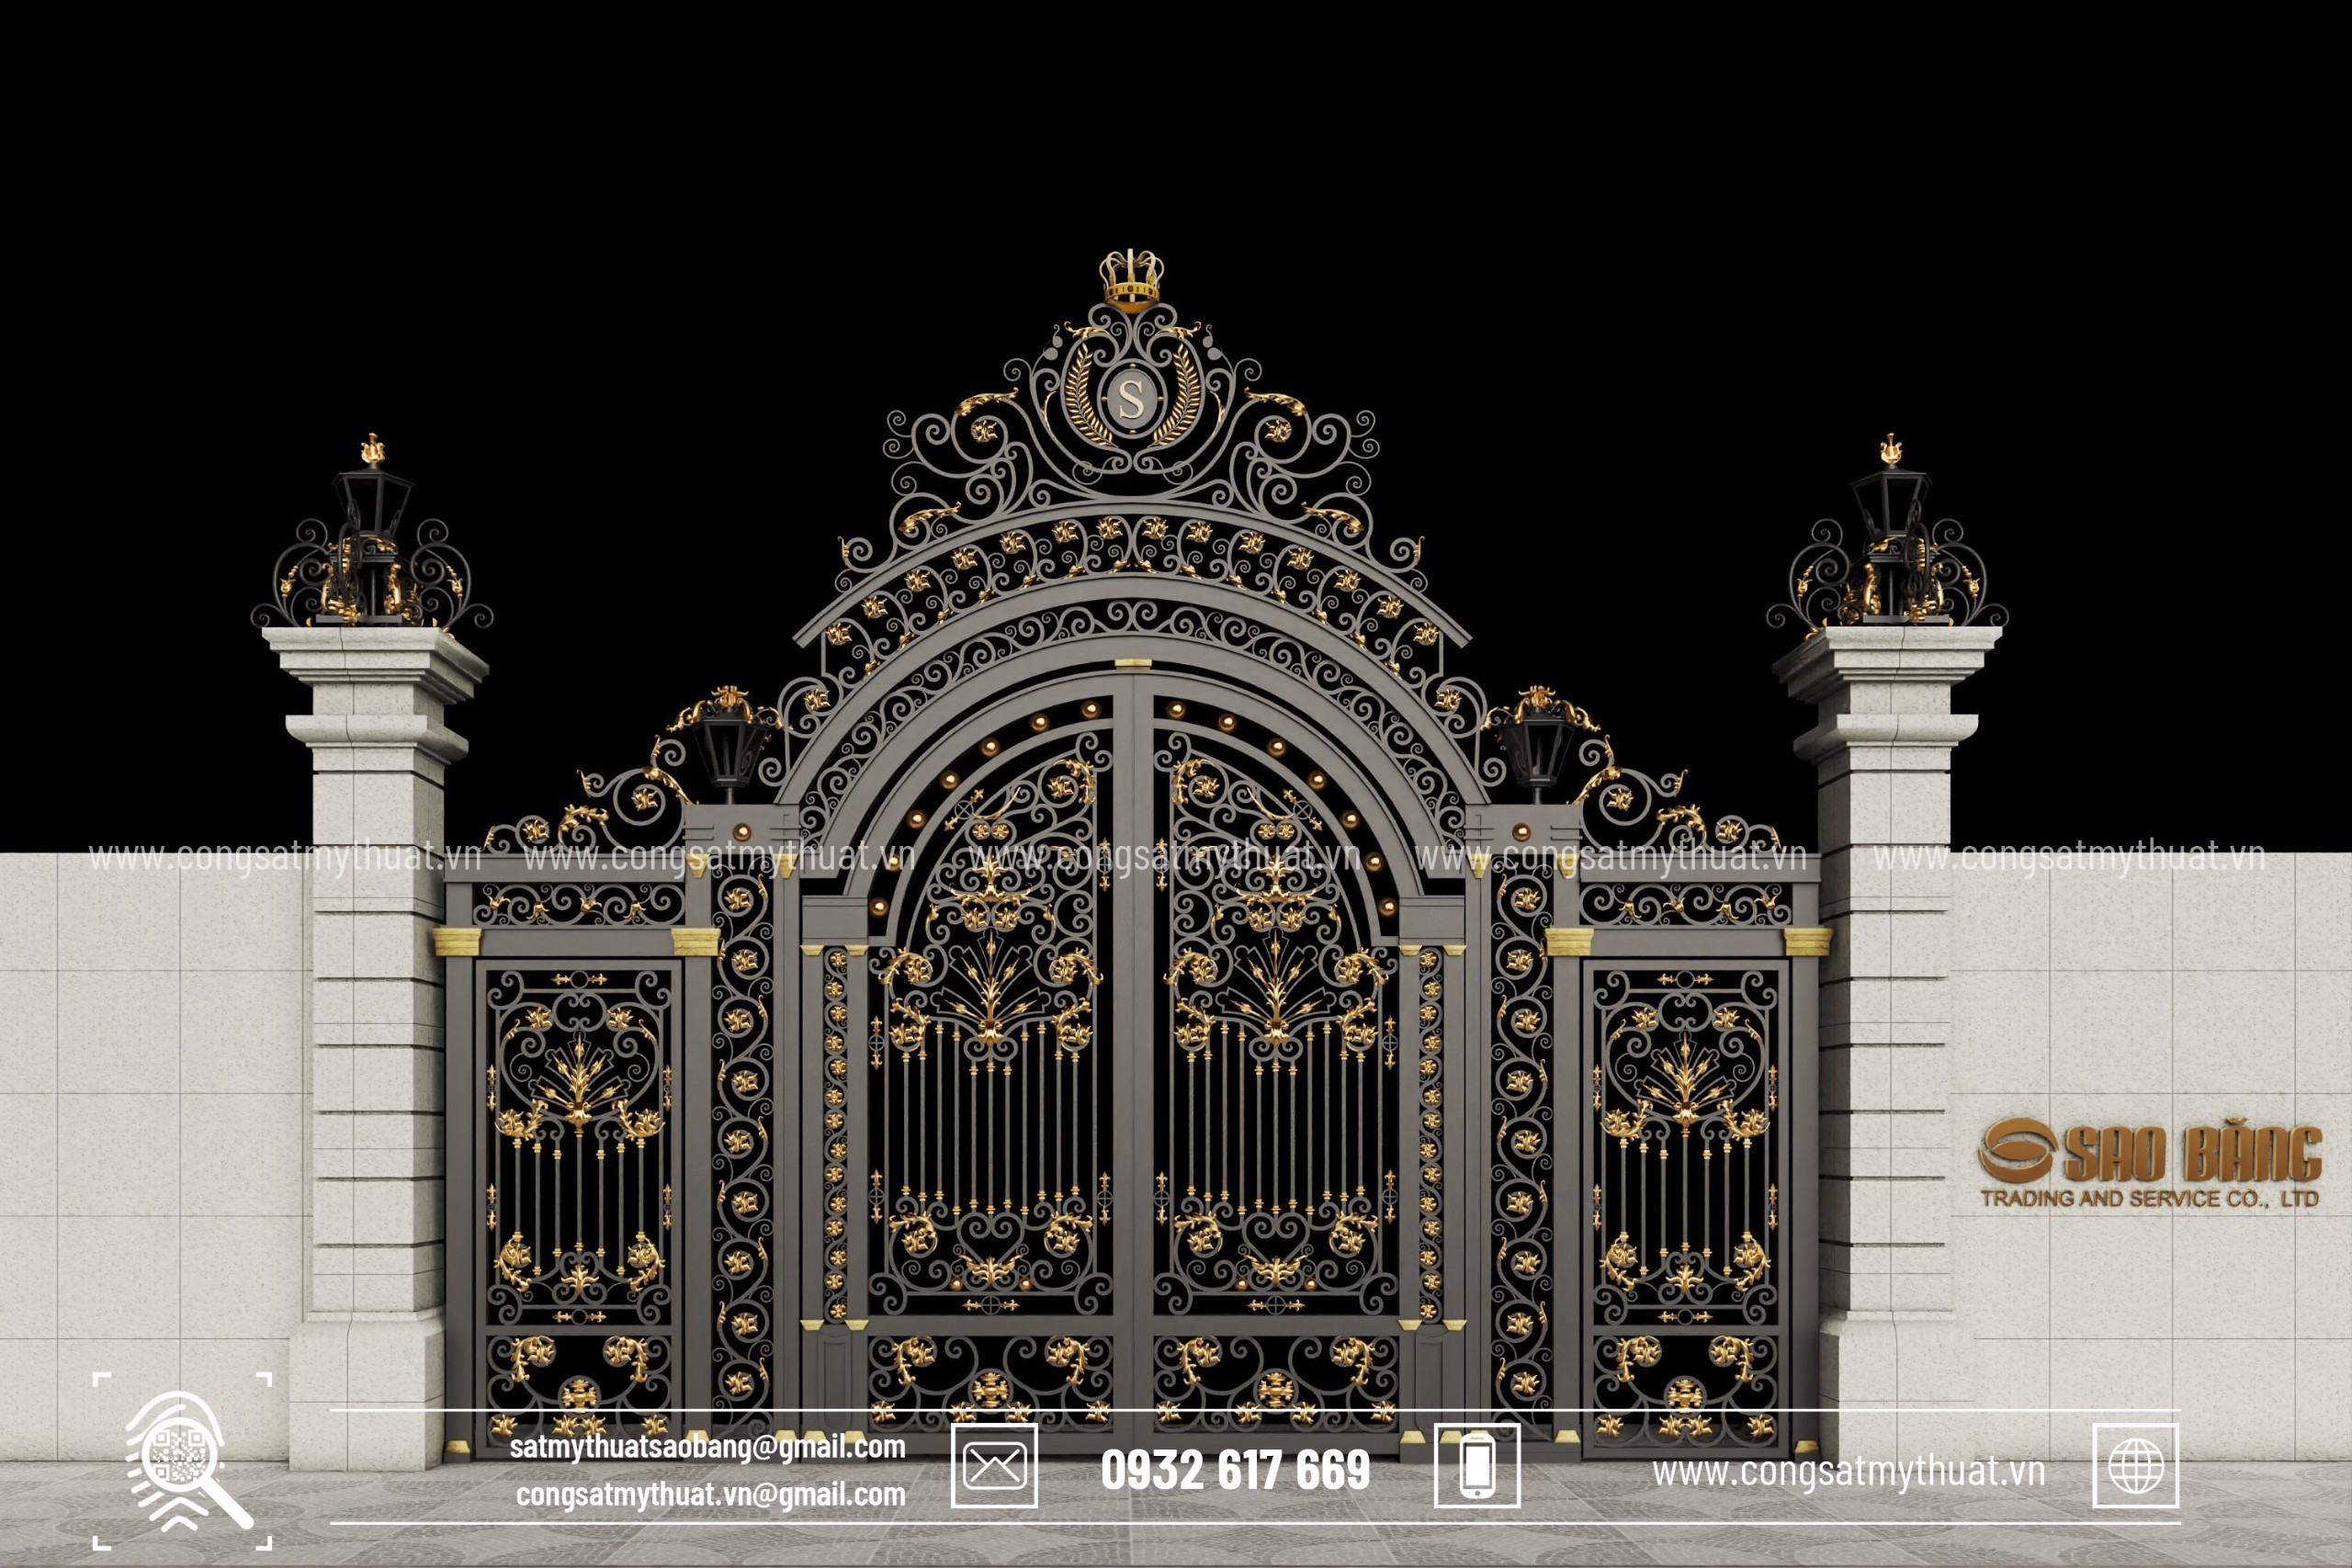 Mẫu cổng biệt thự đẹp có 3 cánh 2 chính 1 phụ có hoạ tiết độc đáo lấy ý  tưởng theo phong cách kiến trúc hoàng gia nổi bật trên nền c… |